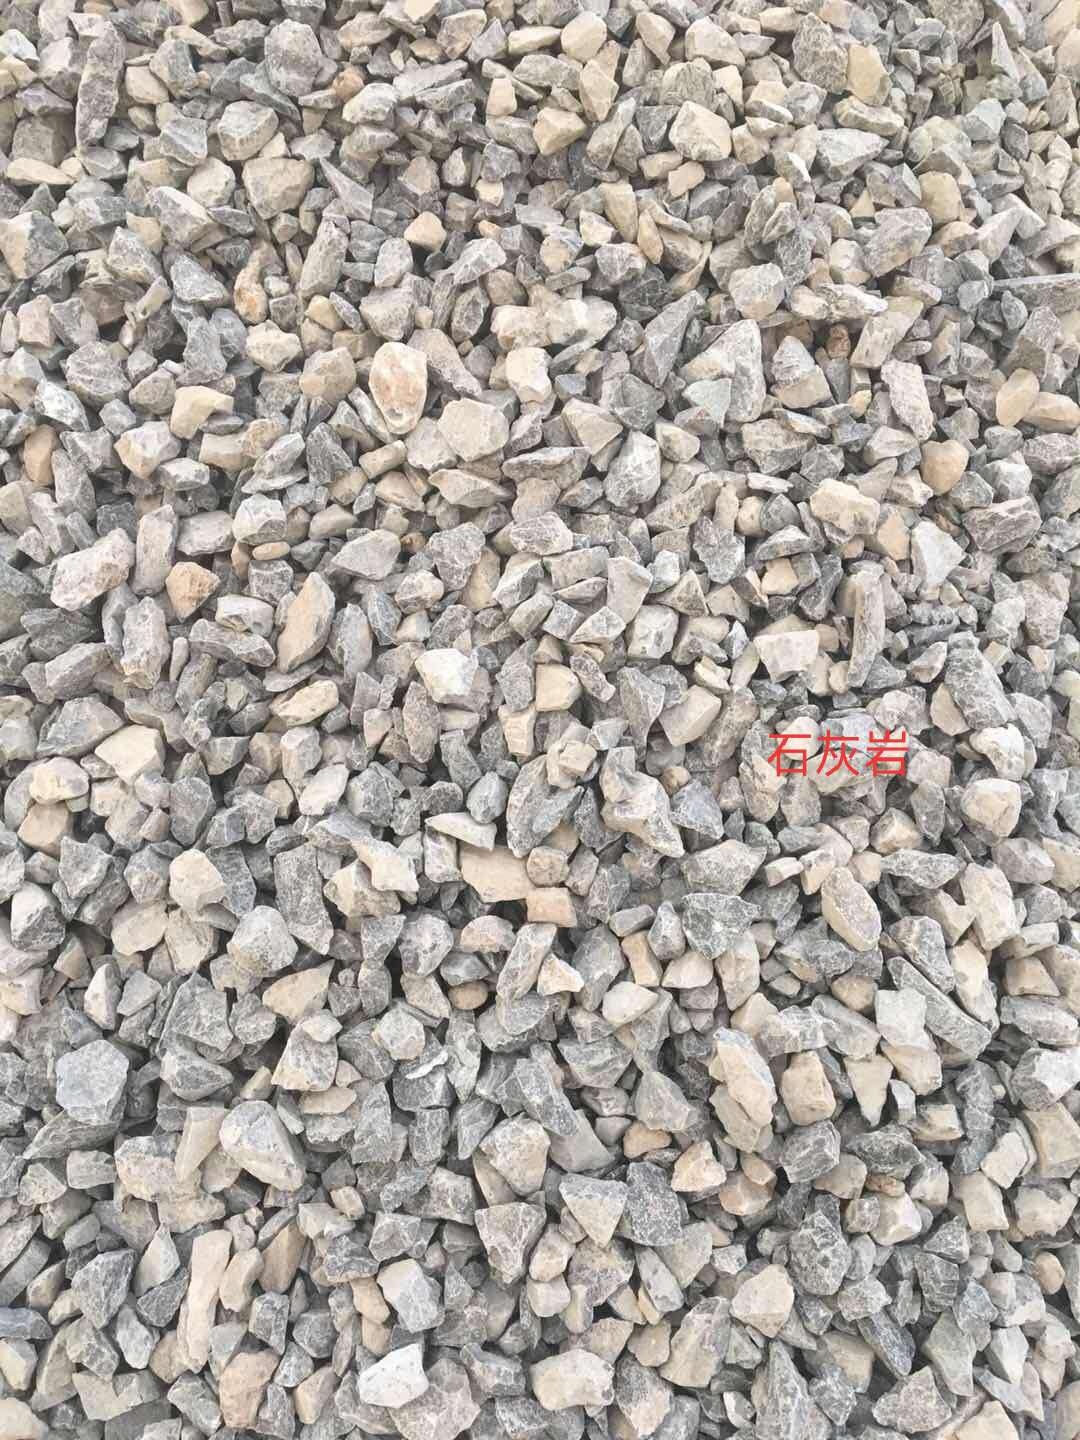 鹤壁石灰岩石料 品质可靠 青石